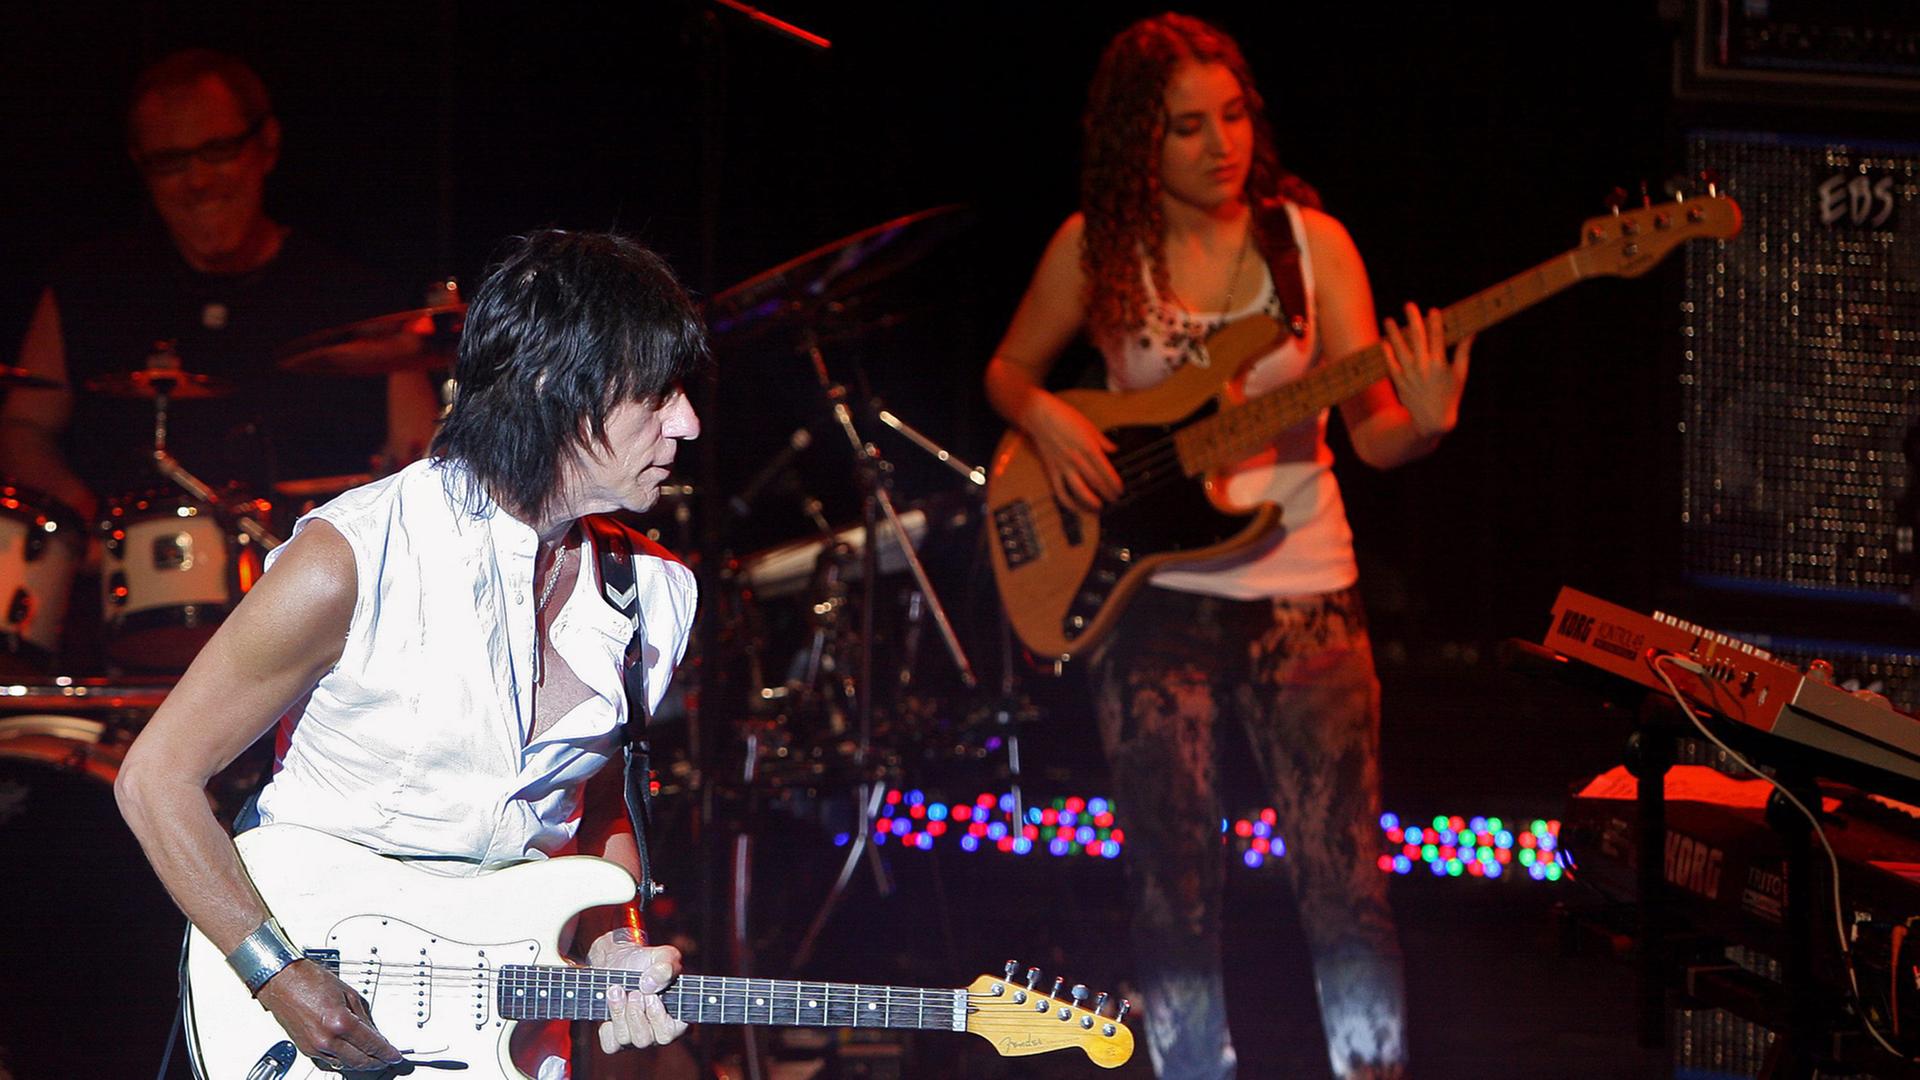 Ein weiß gekleideter Mann spielt auf einer weißen Gitarre, im dunklen Bühnenhintergrund steht eine Frau mit Baßgitarre.